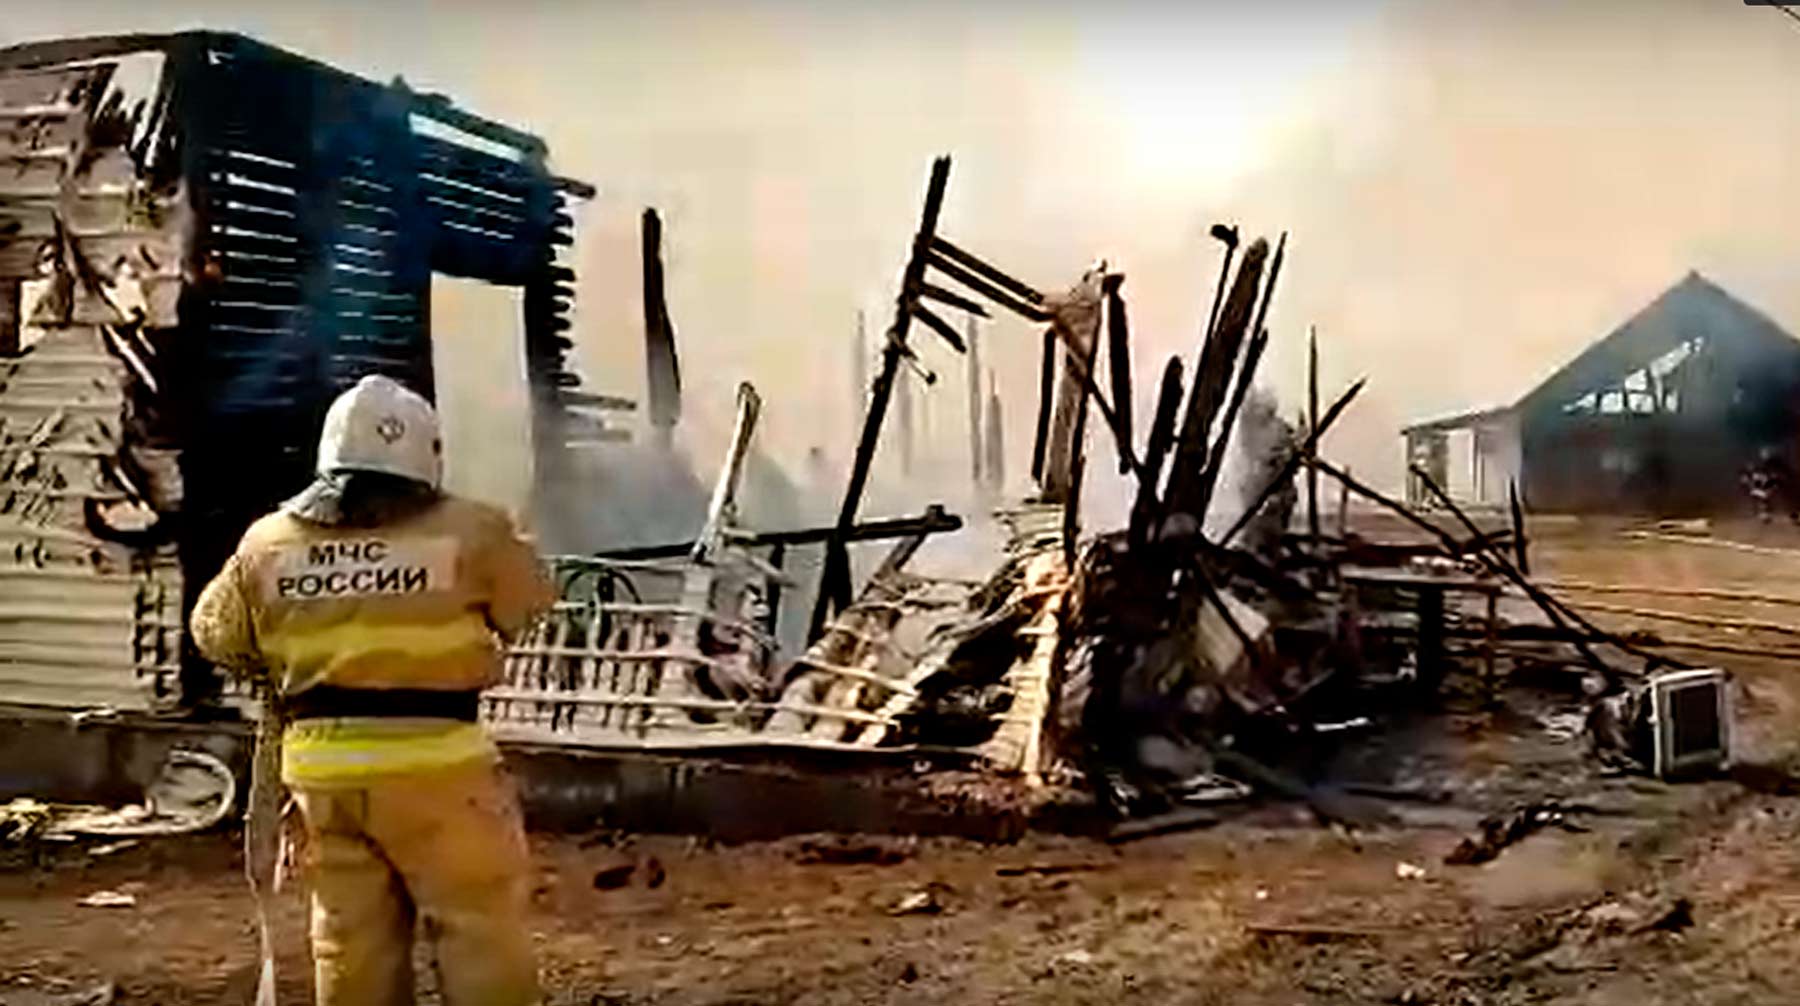 Площадь возгорания составила одну тысячу квадратных метров Фото: © кадр из видео